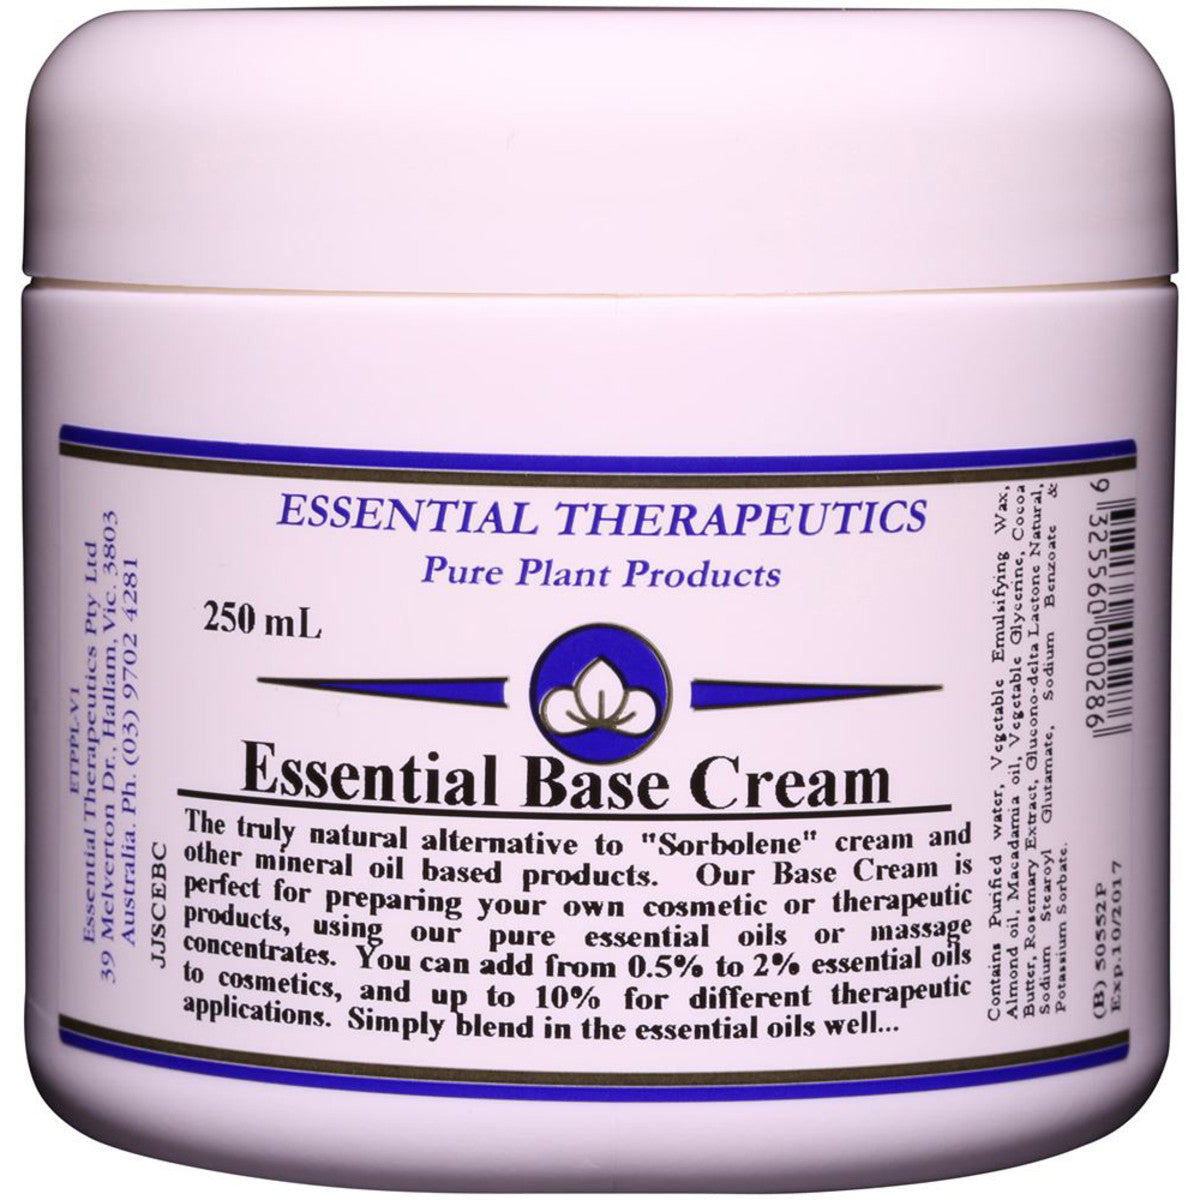 Essential Therapeutic - Essential Base Cream